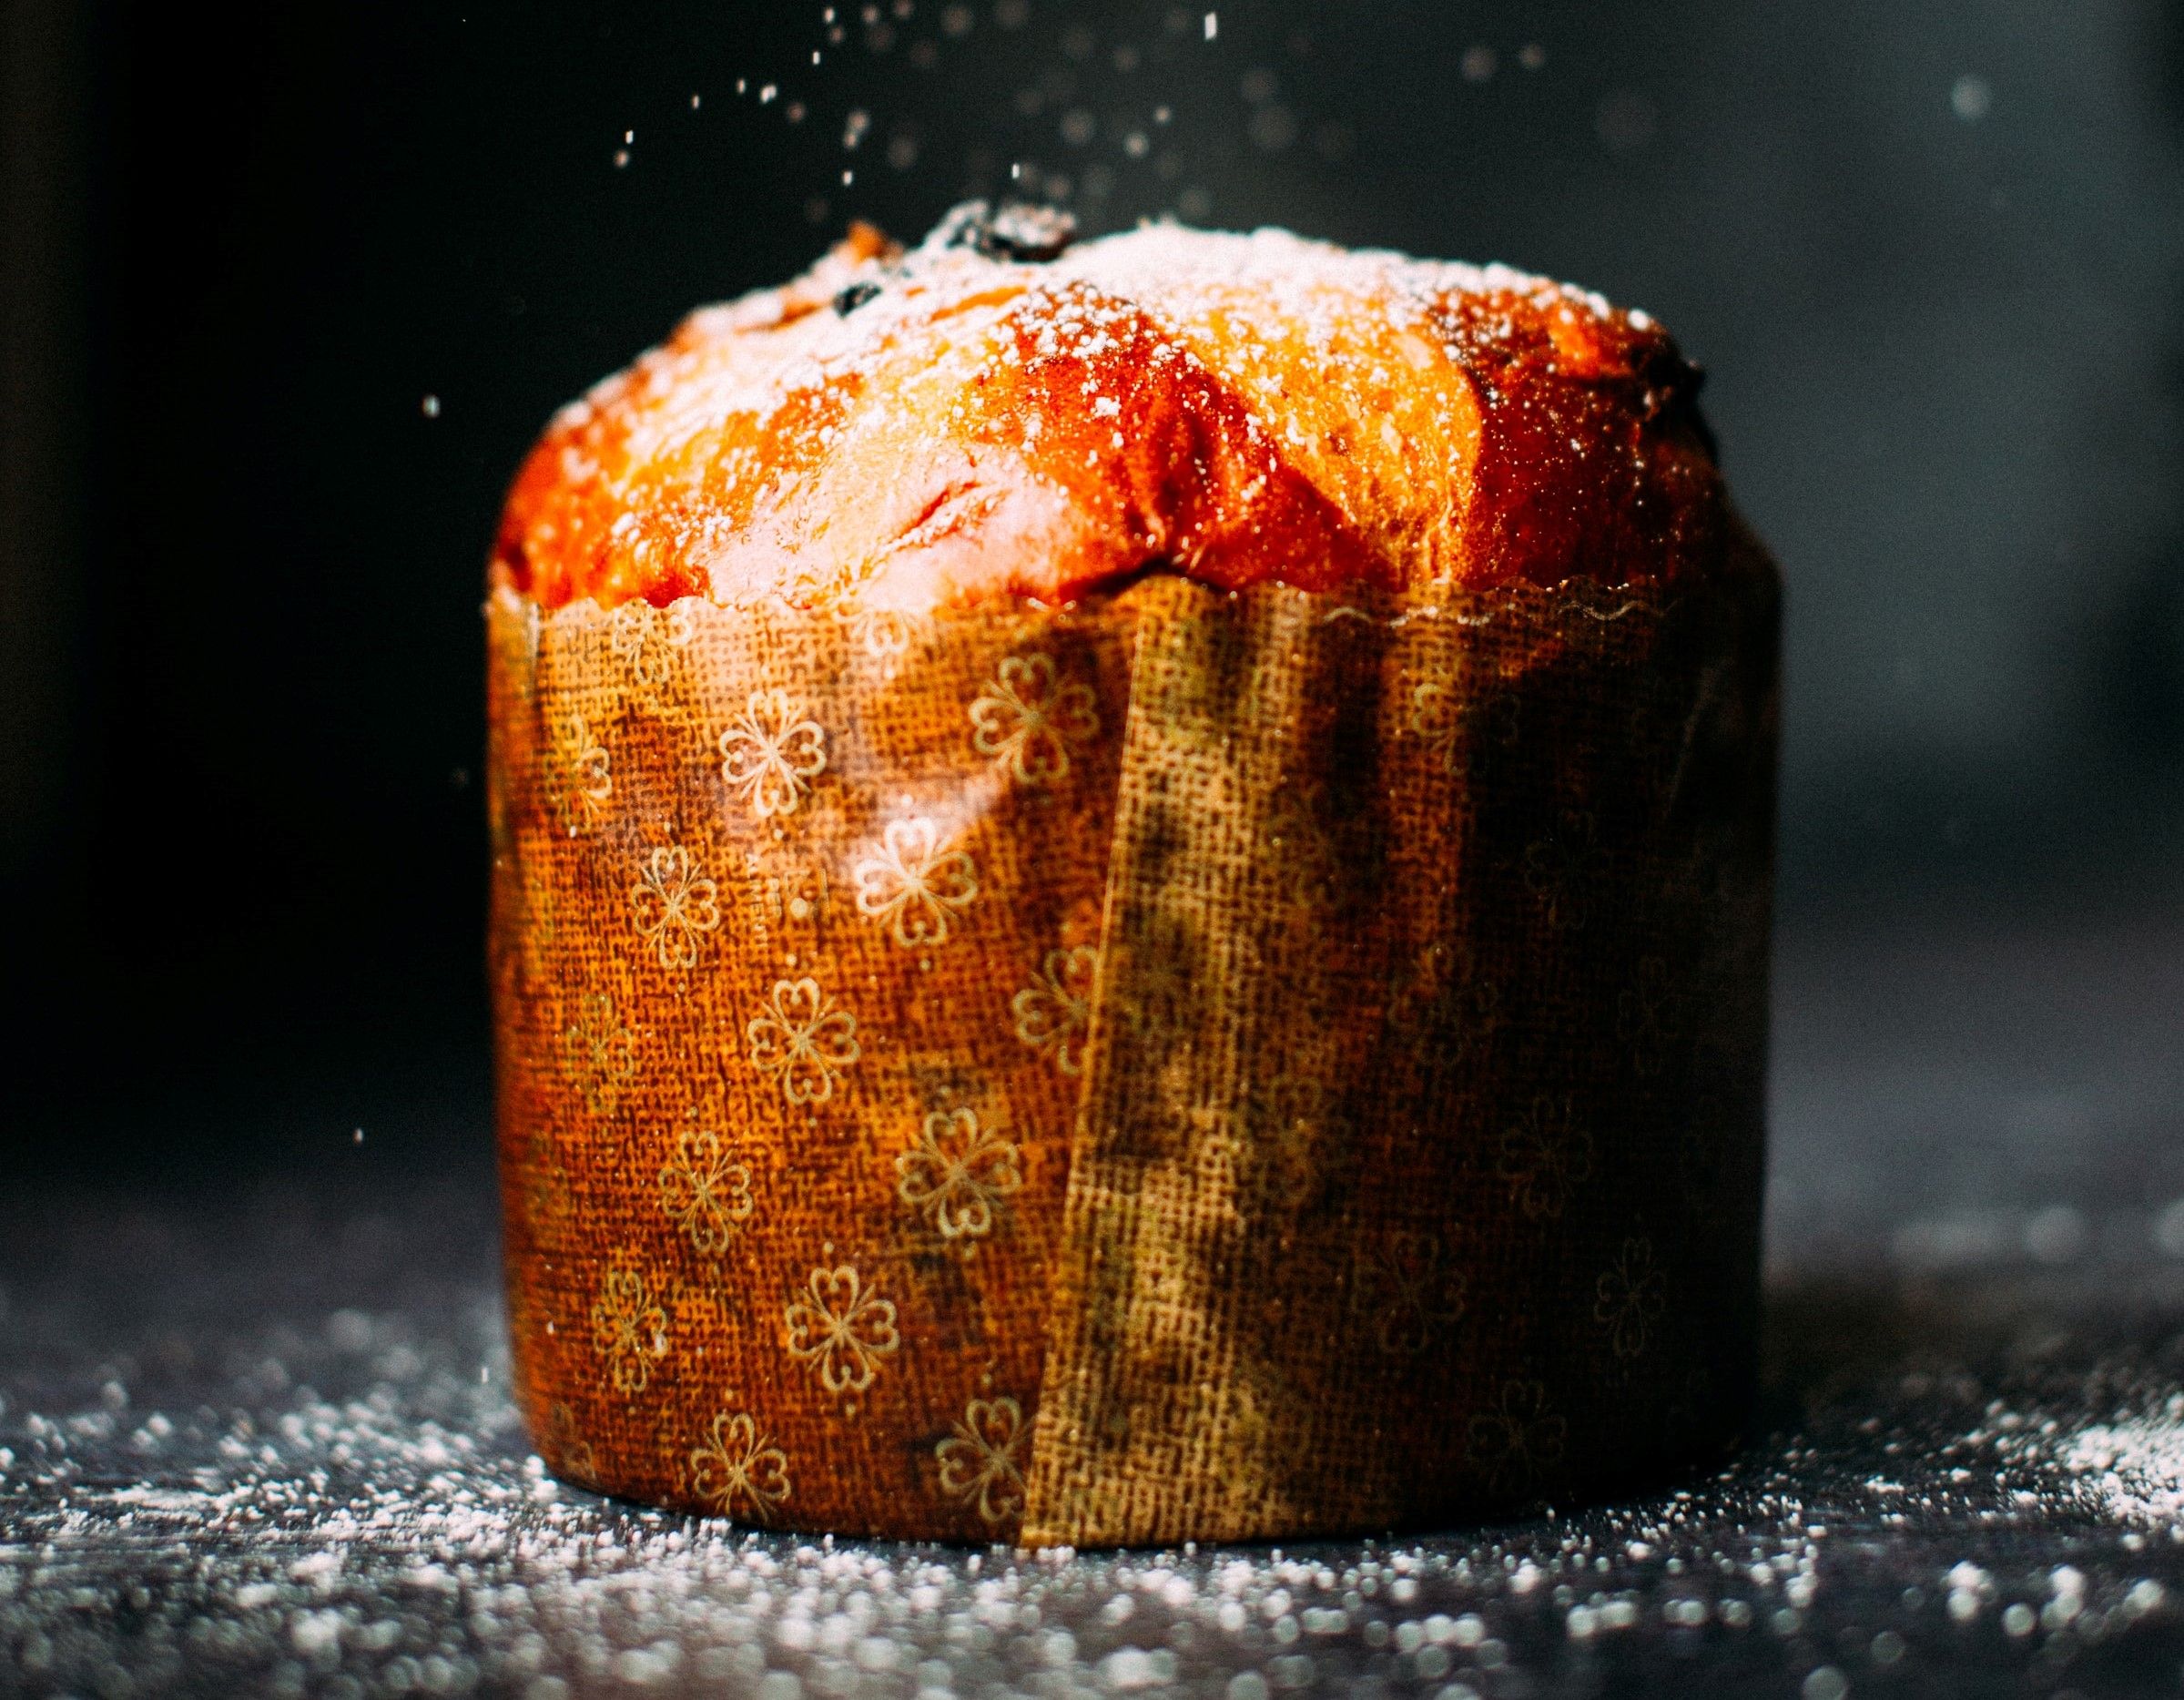 24 Jan 2019 Onward: Bread History CNY Cake Promotion - EverydayOnSales.com